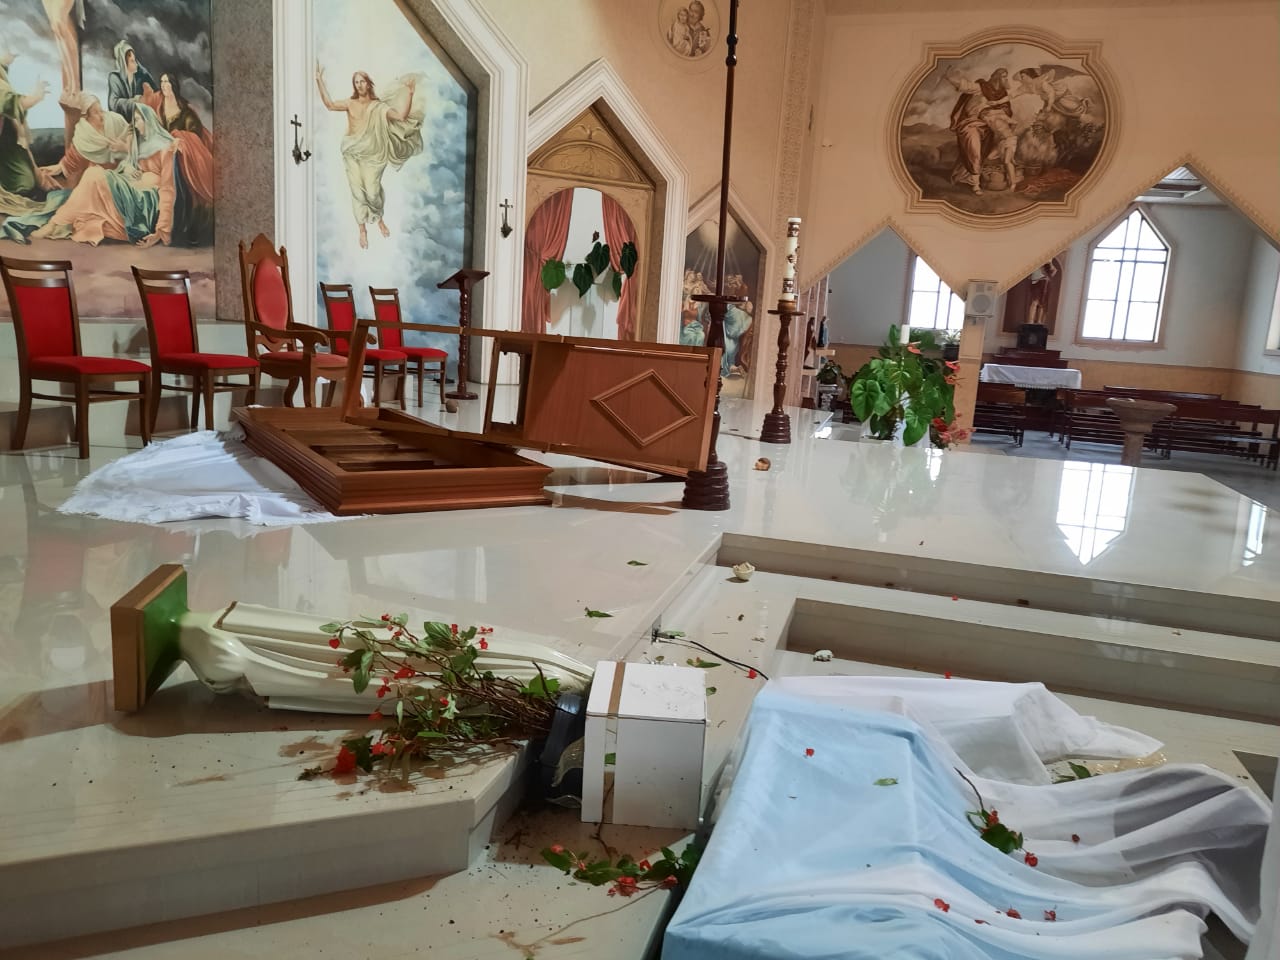 Fotos: Igreja matriz em Treze de Maio é alvo de ataque na manhã desta quarta-feira